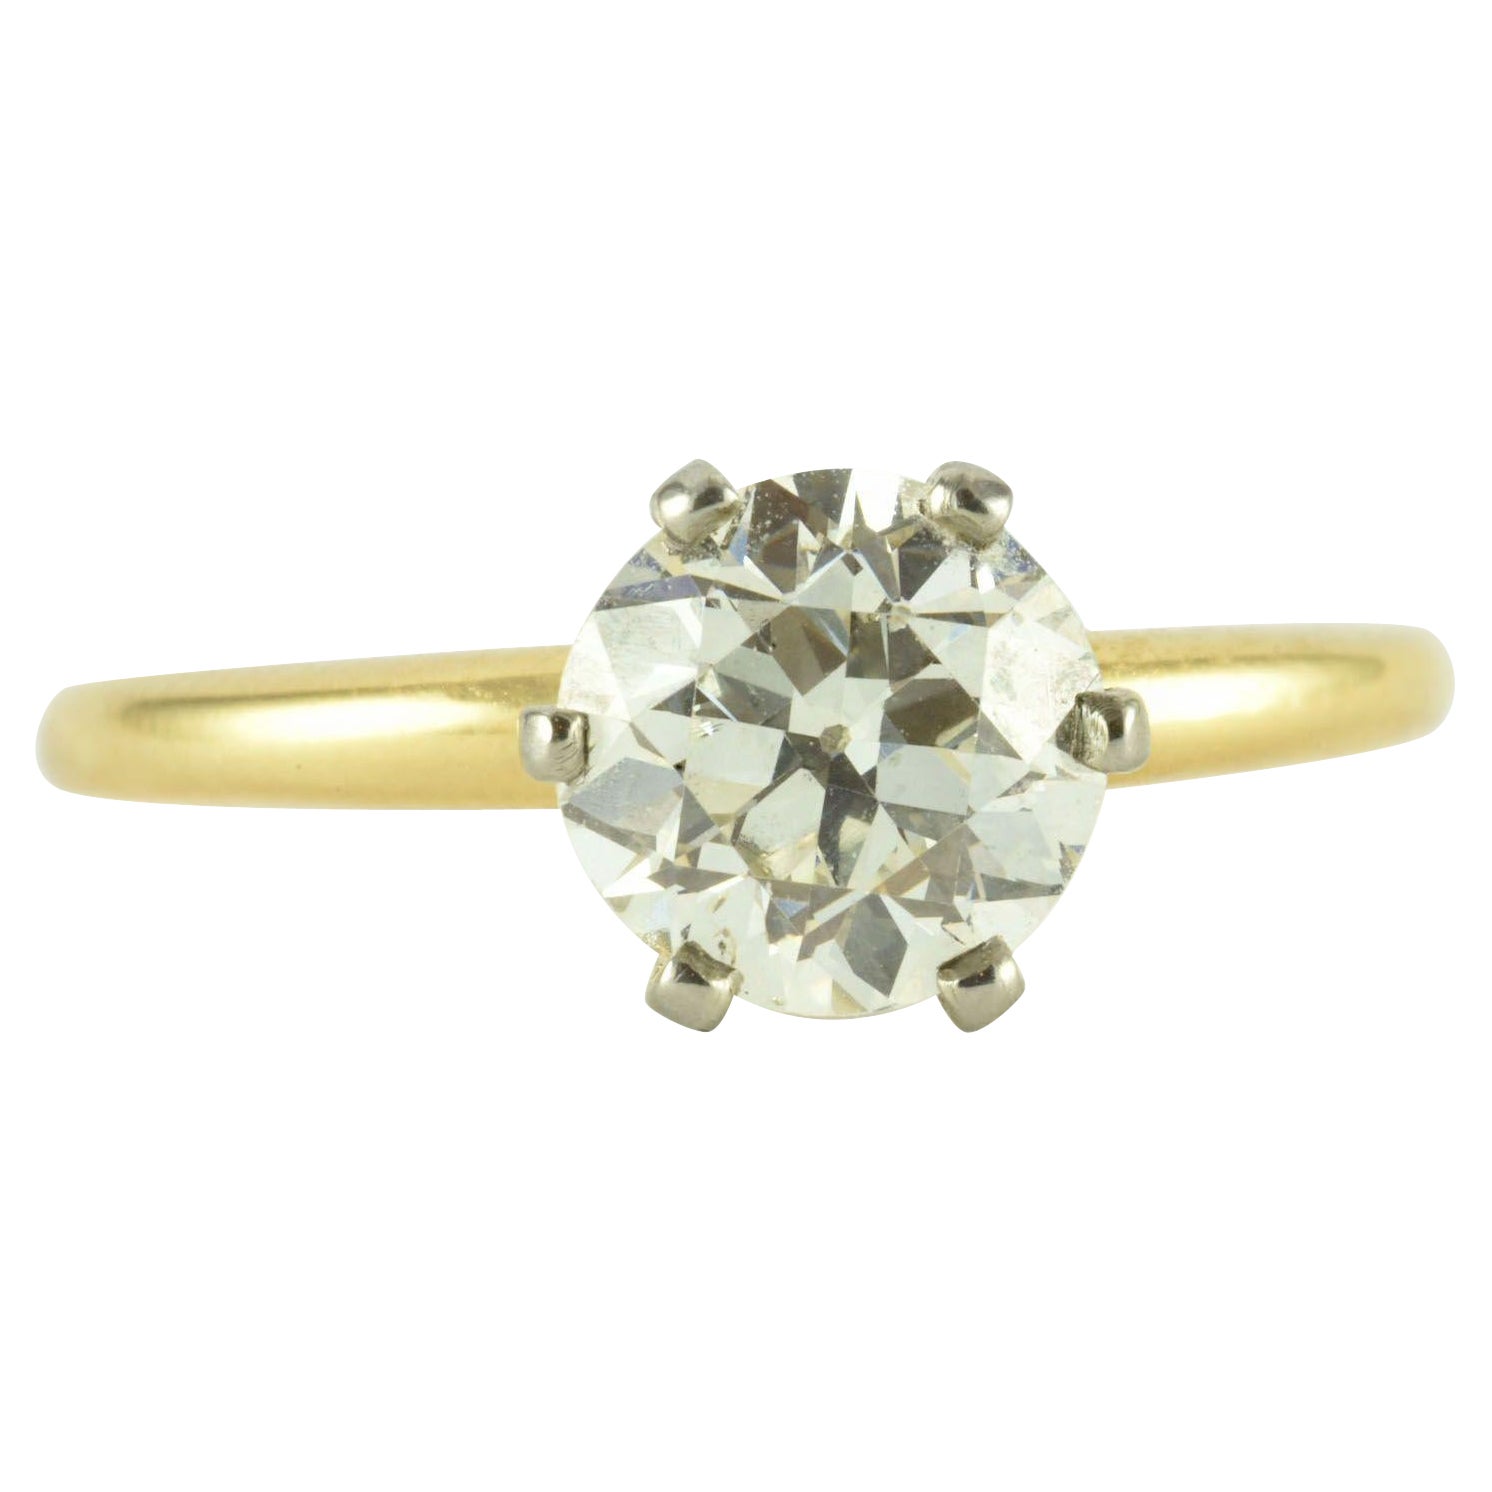 Antique 1.40 Carat Solitaire Diamond Engagement Ring